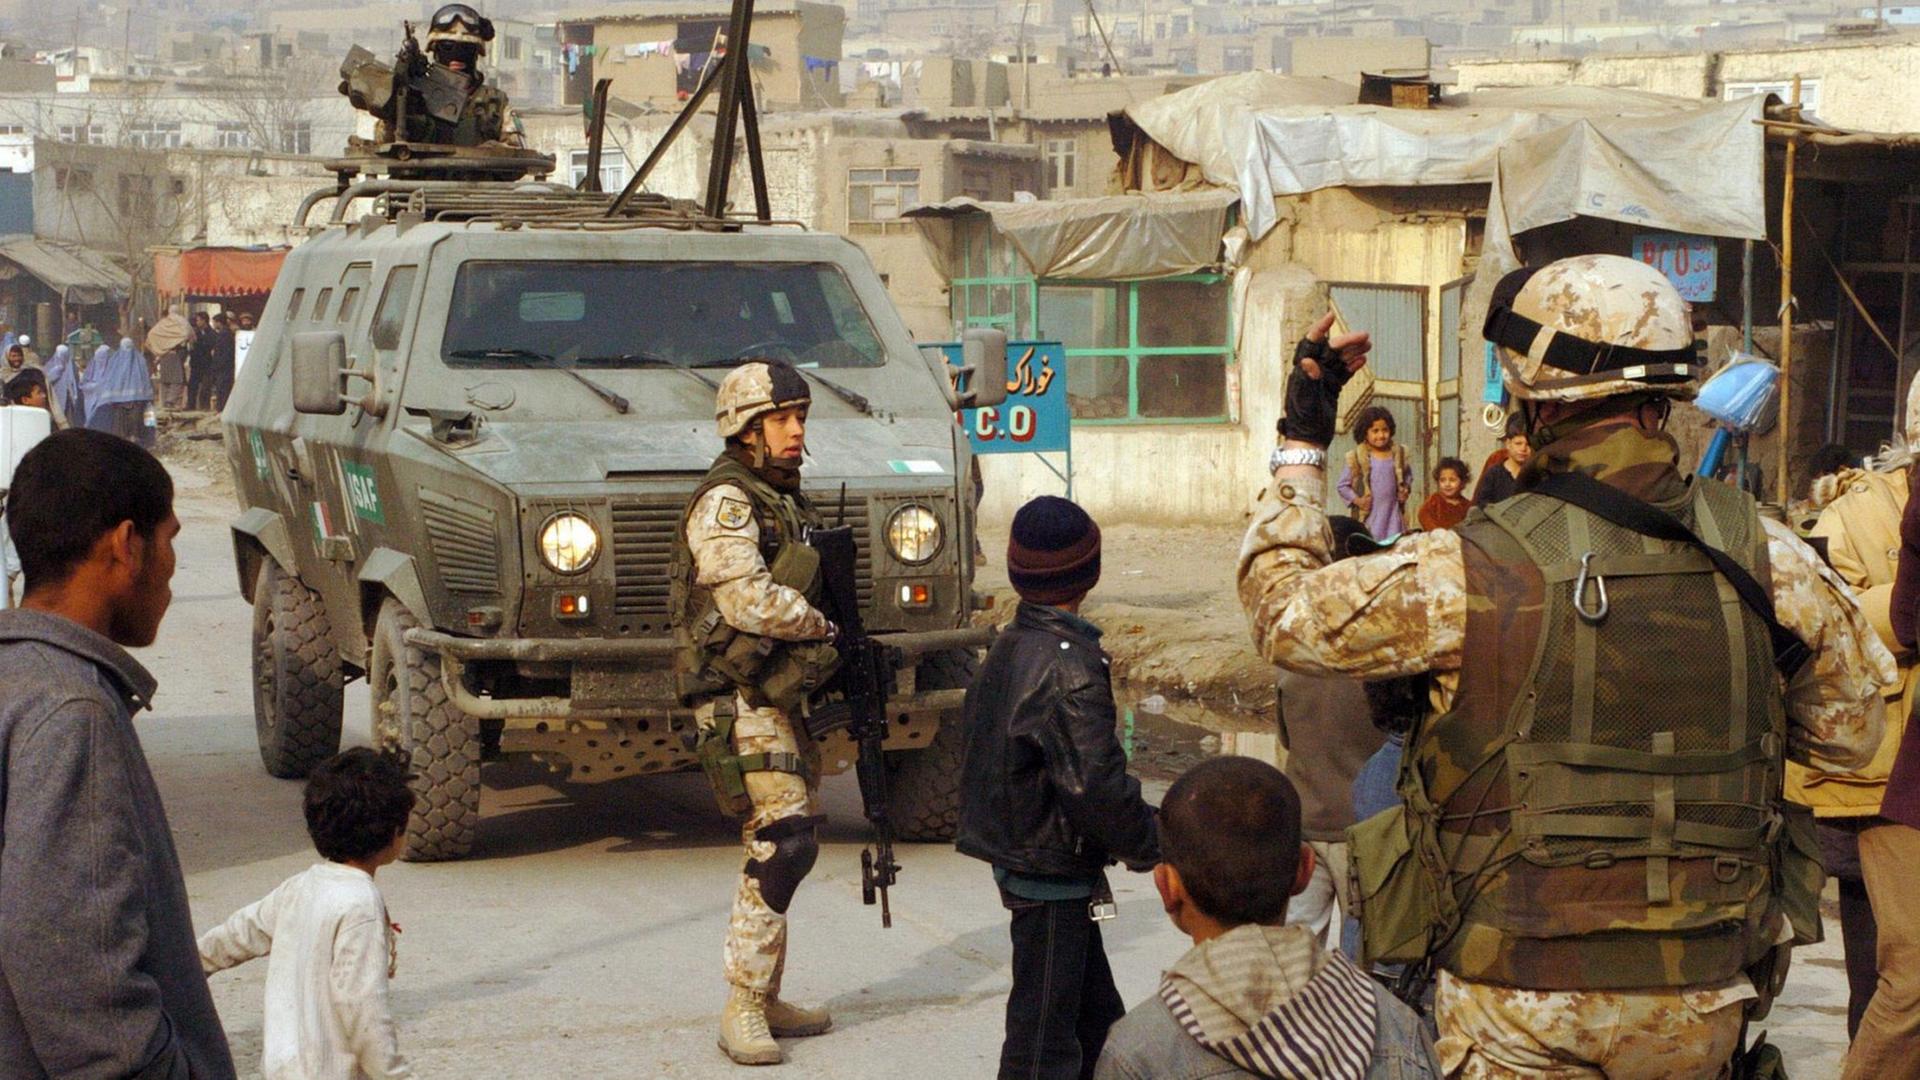 Italienische ISAF-Soldaten bei einer Staßenpatrouille in Kabul. Zwischen den Soldaten laufen Kinder.